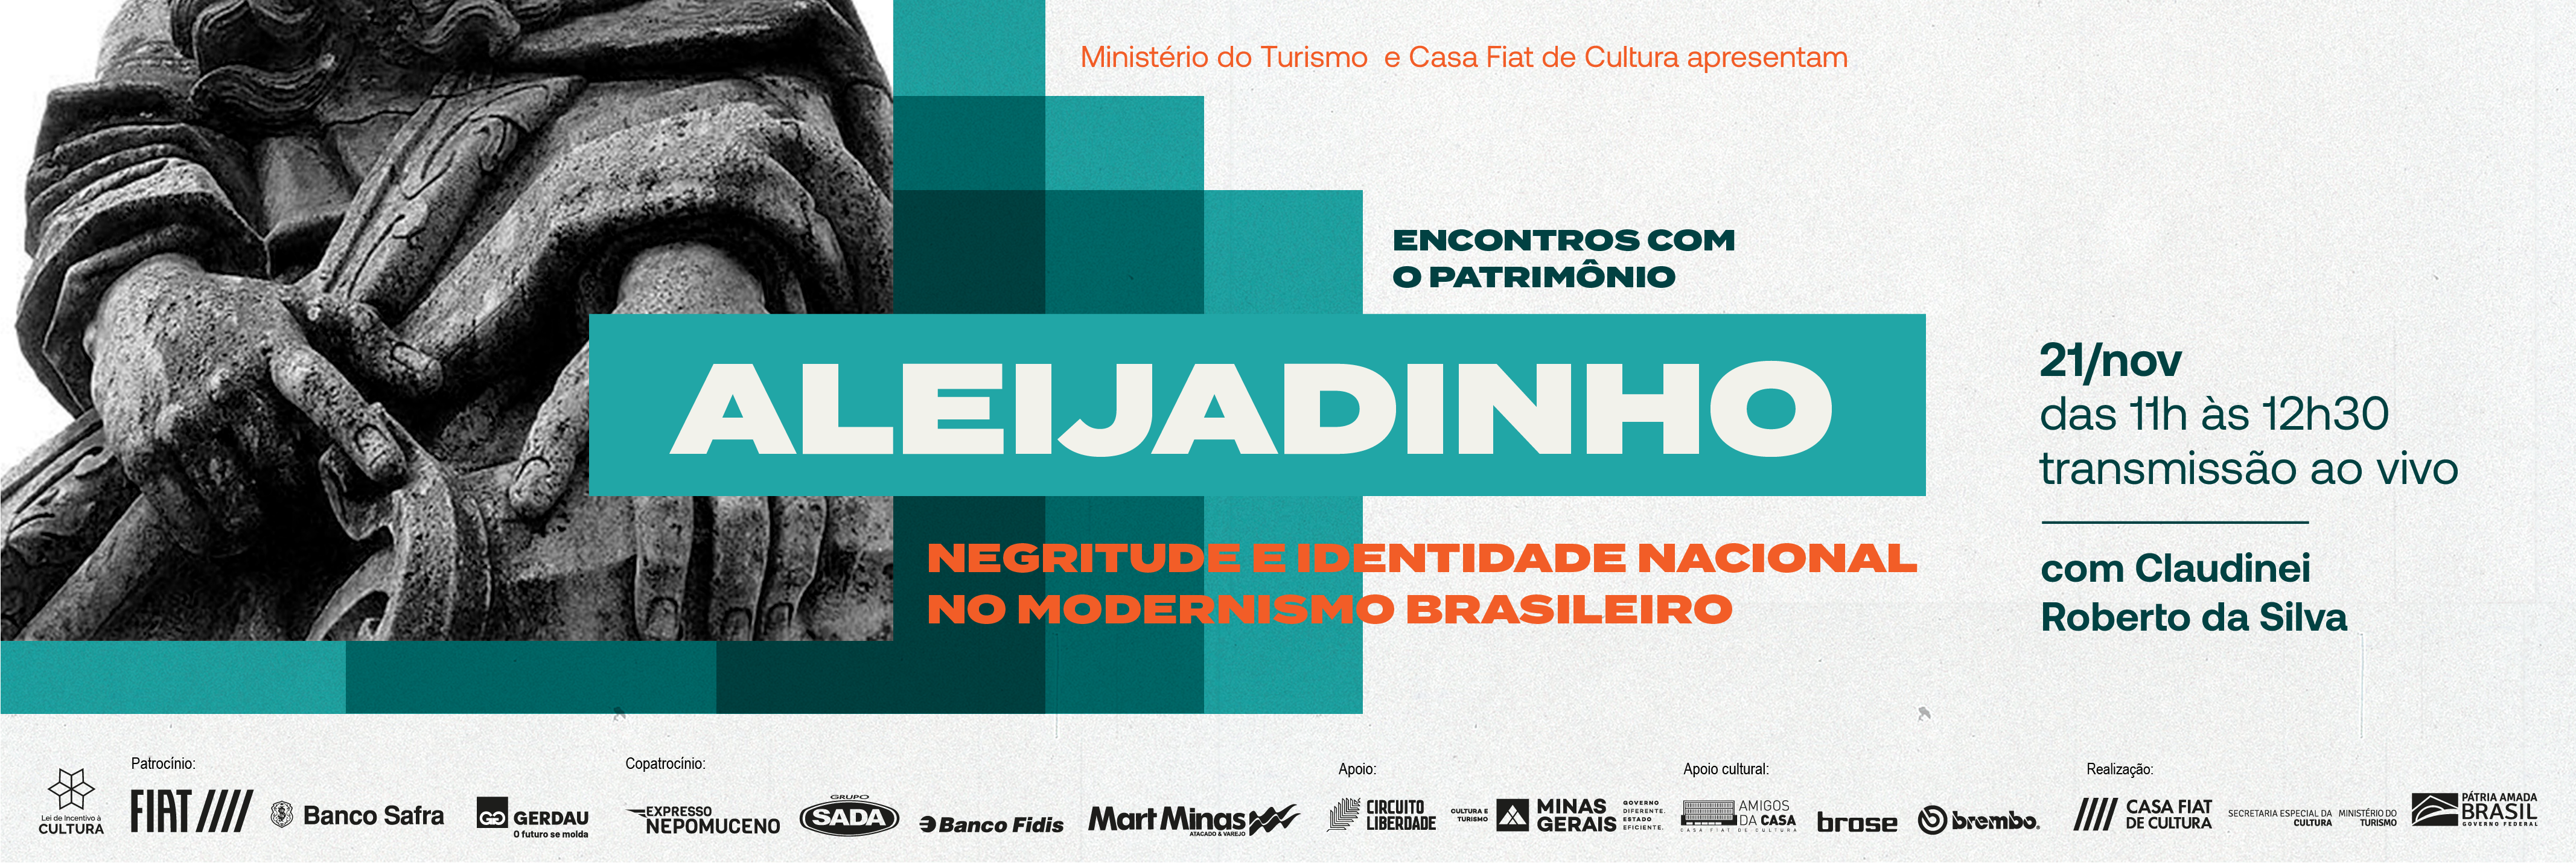 Encontros com o Patrimônio | Aleijadinho: negritude e identidade nacional no modernismo brasileiro